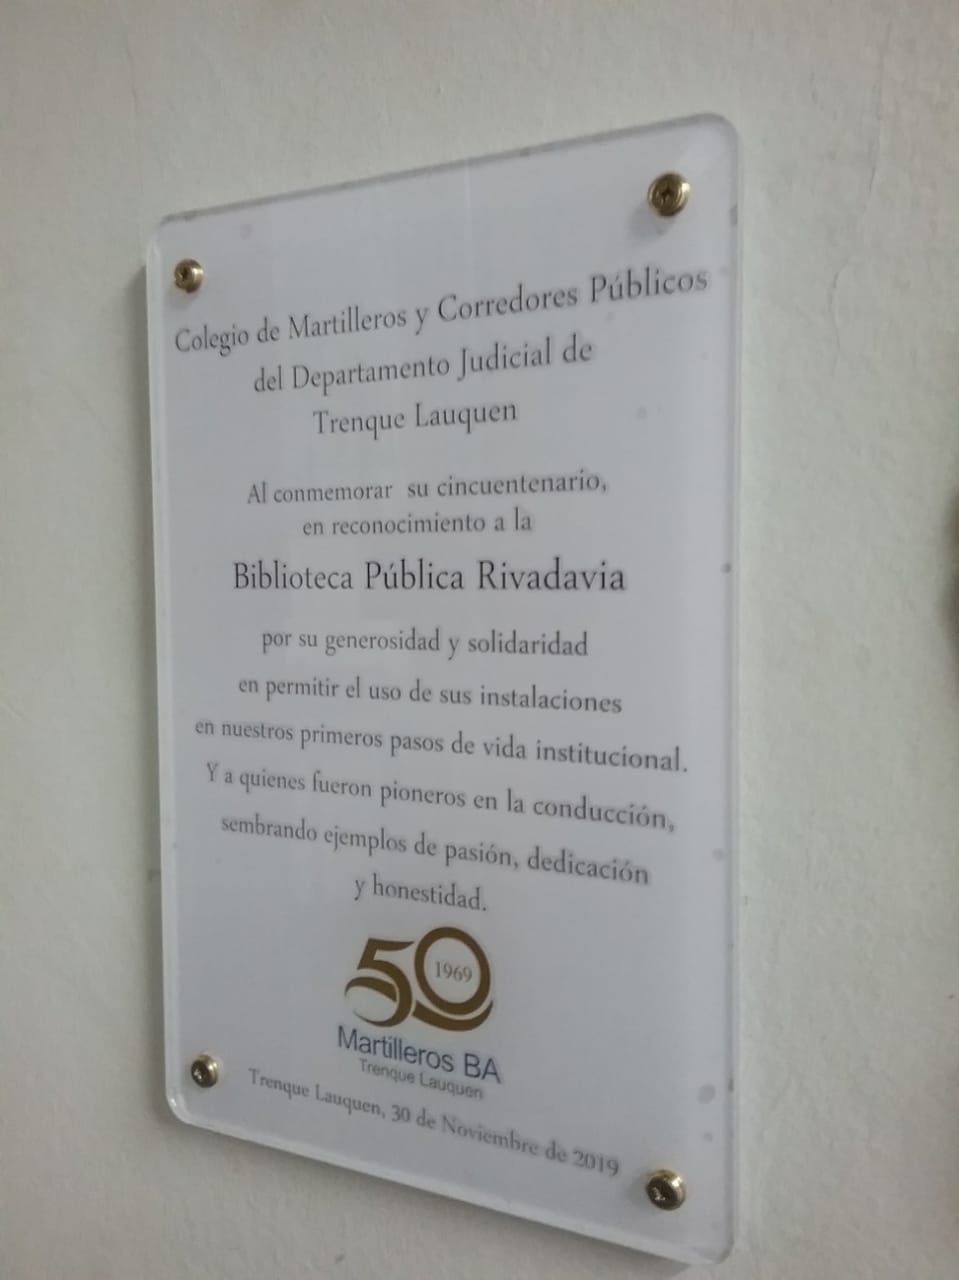 50 aniversario del Colegio de Martilleros